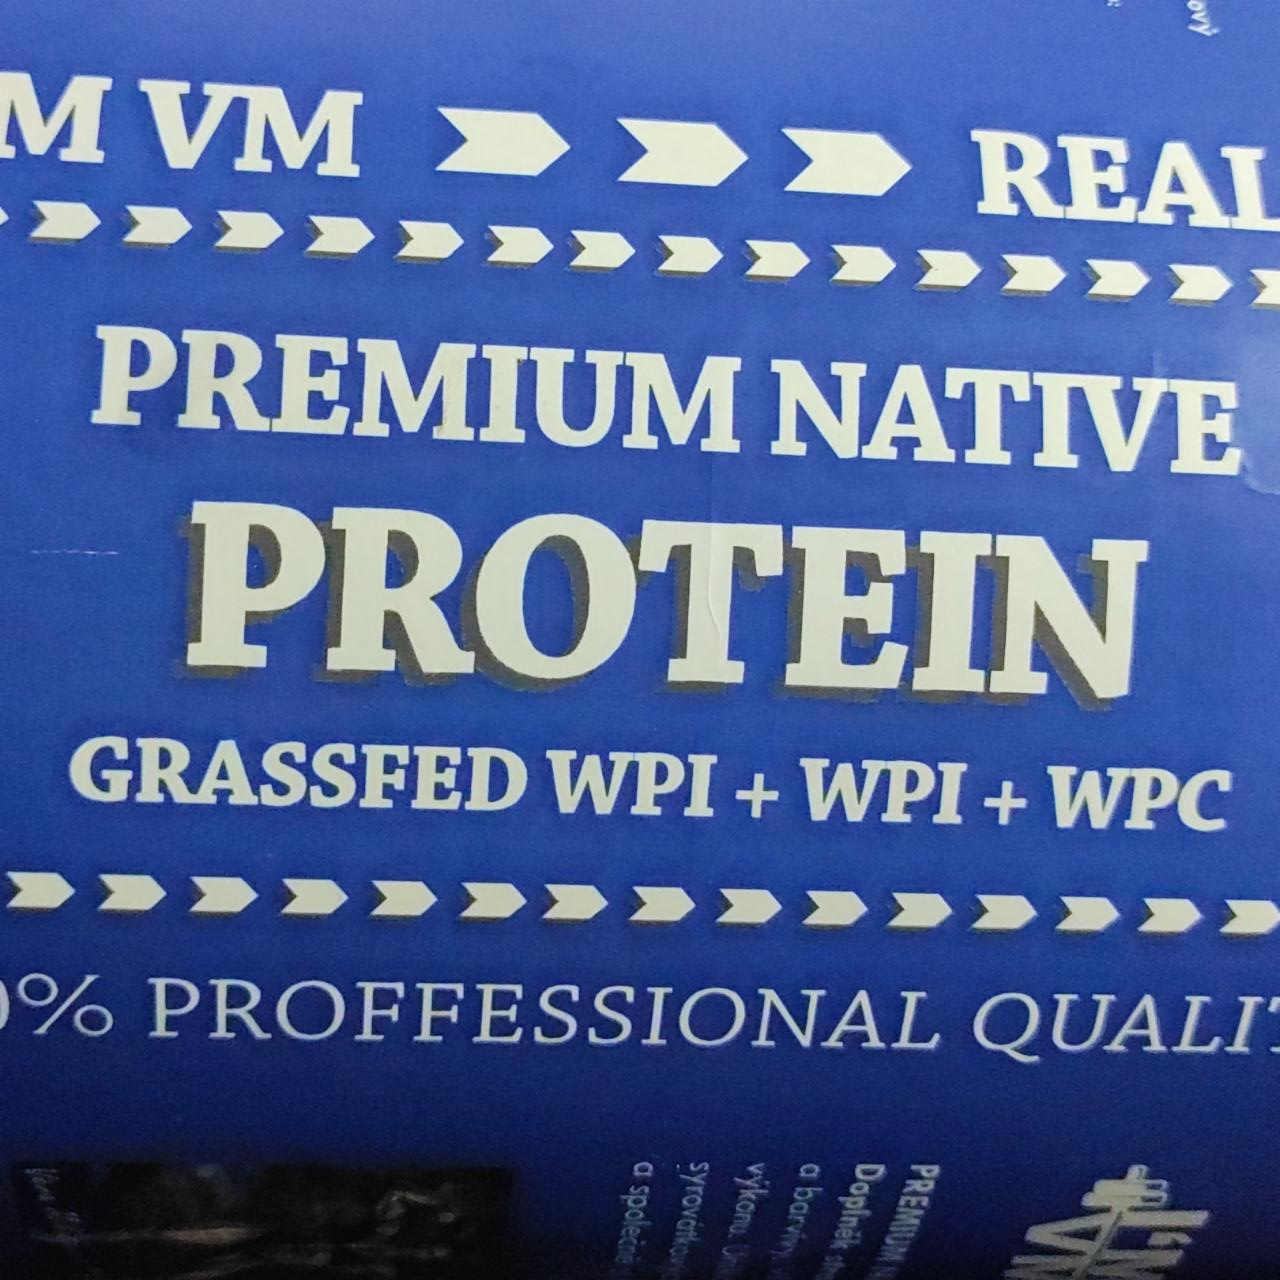 Fotografie - Premium native protein I'M VM